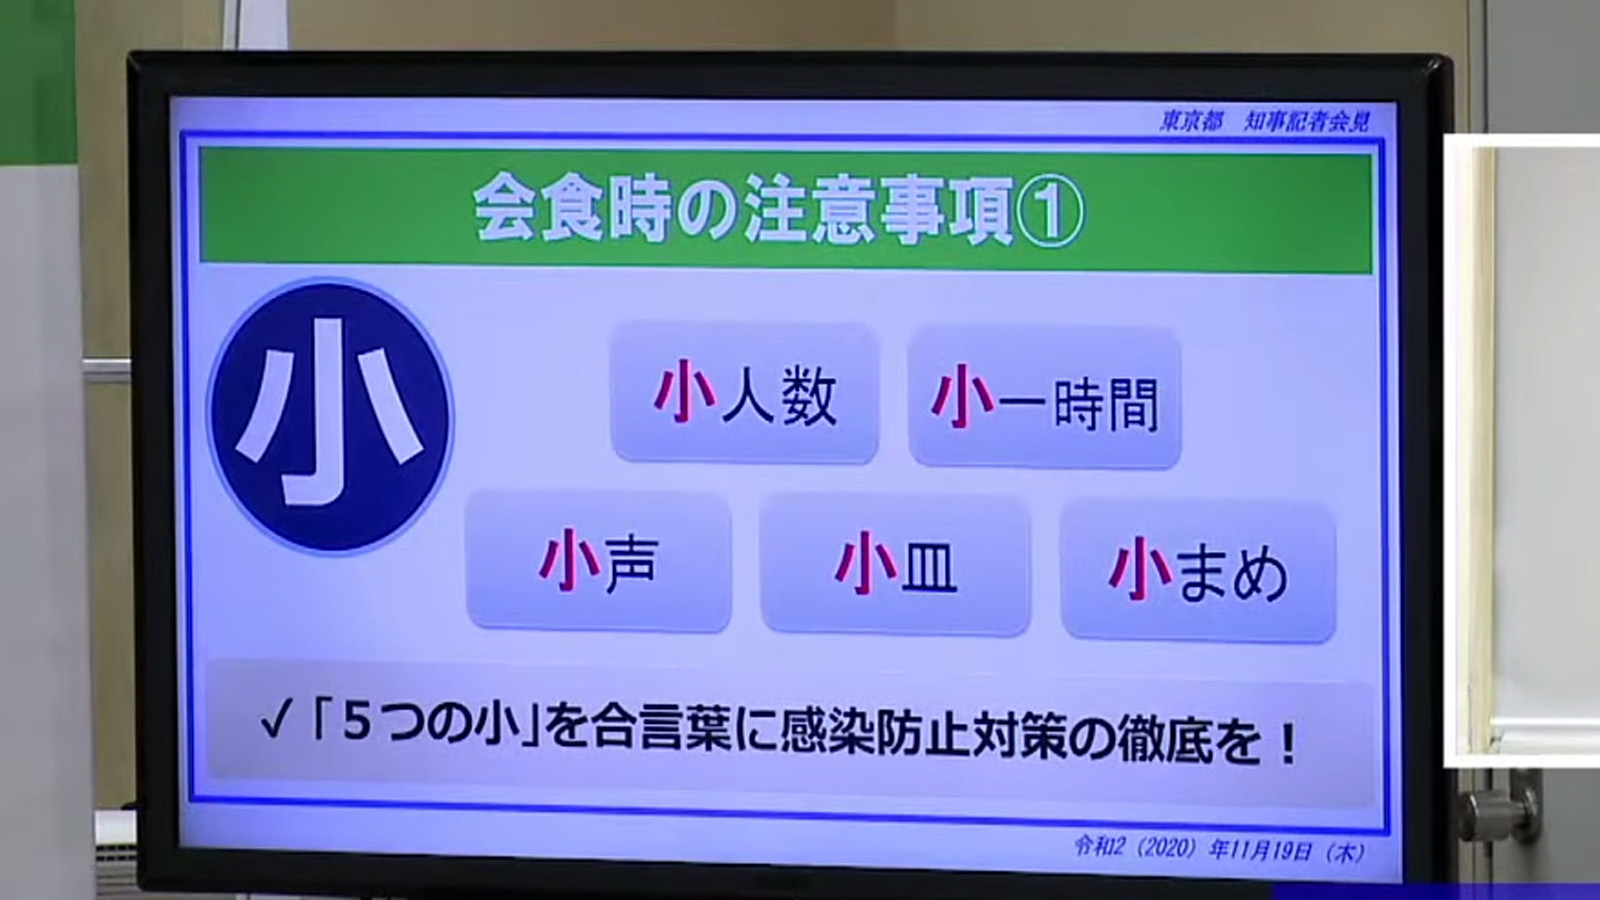 Die fünf Empfehlungen der Tokioter Lokalregierung.